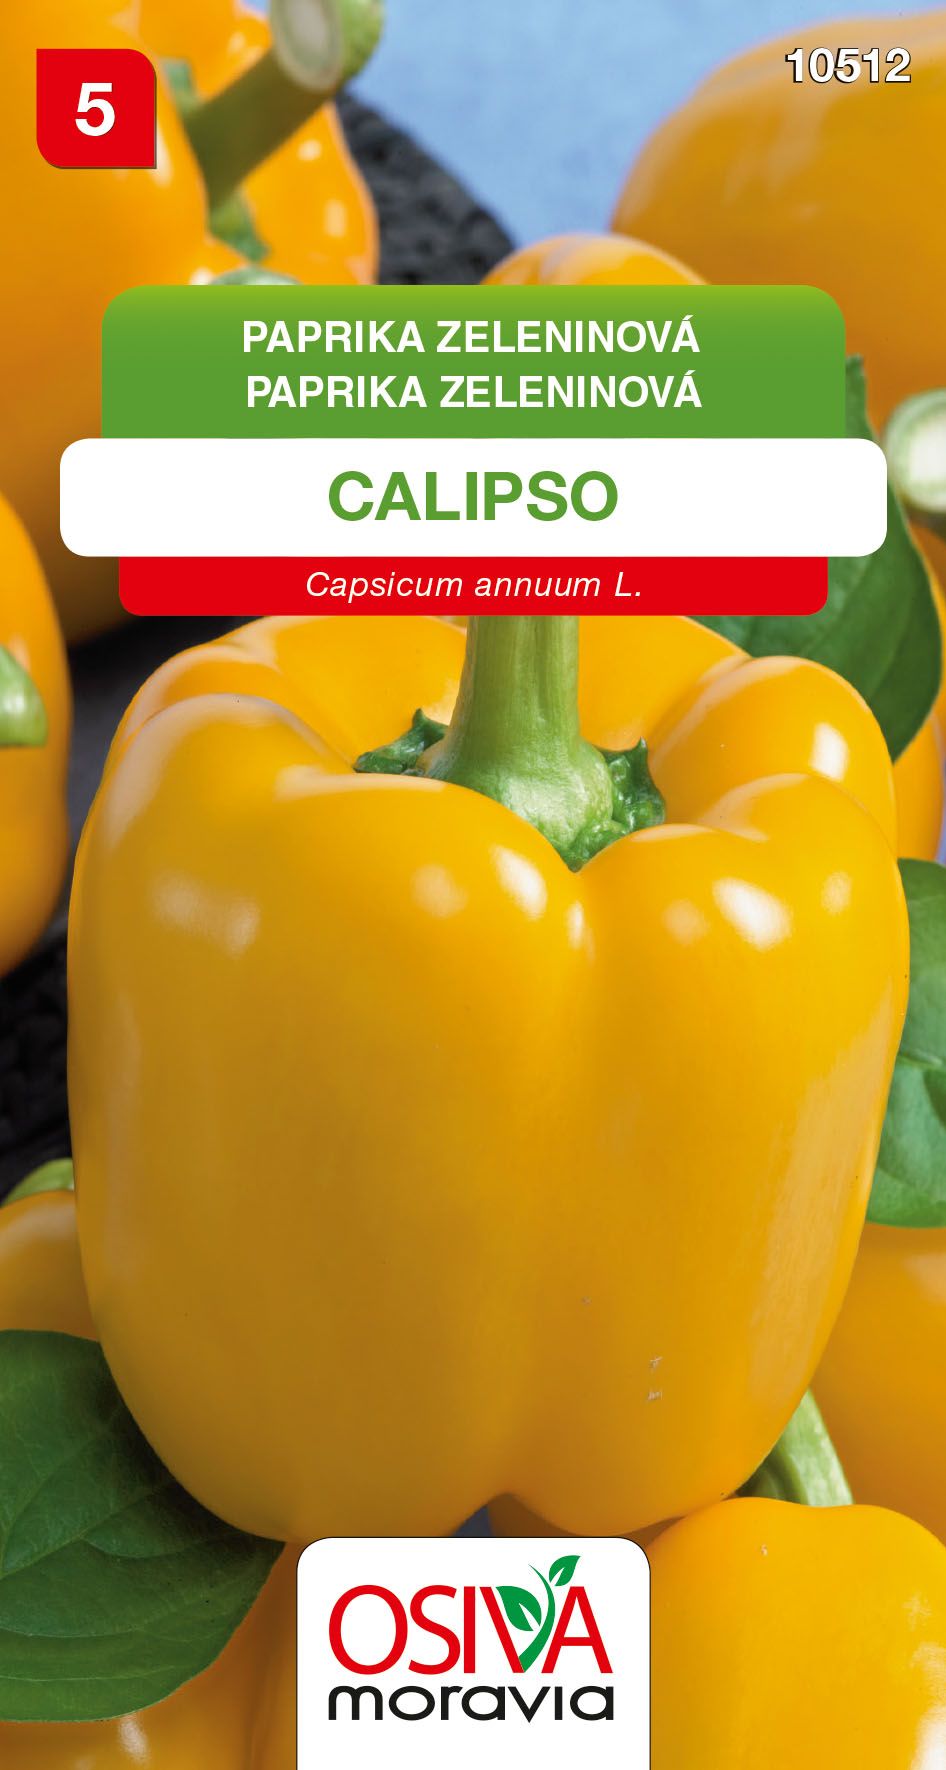 Paprika zeleninová - sladká - Calipso